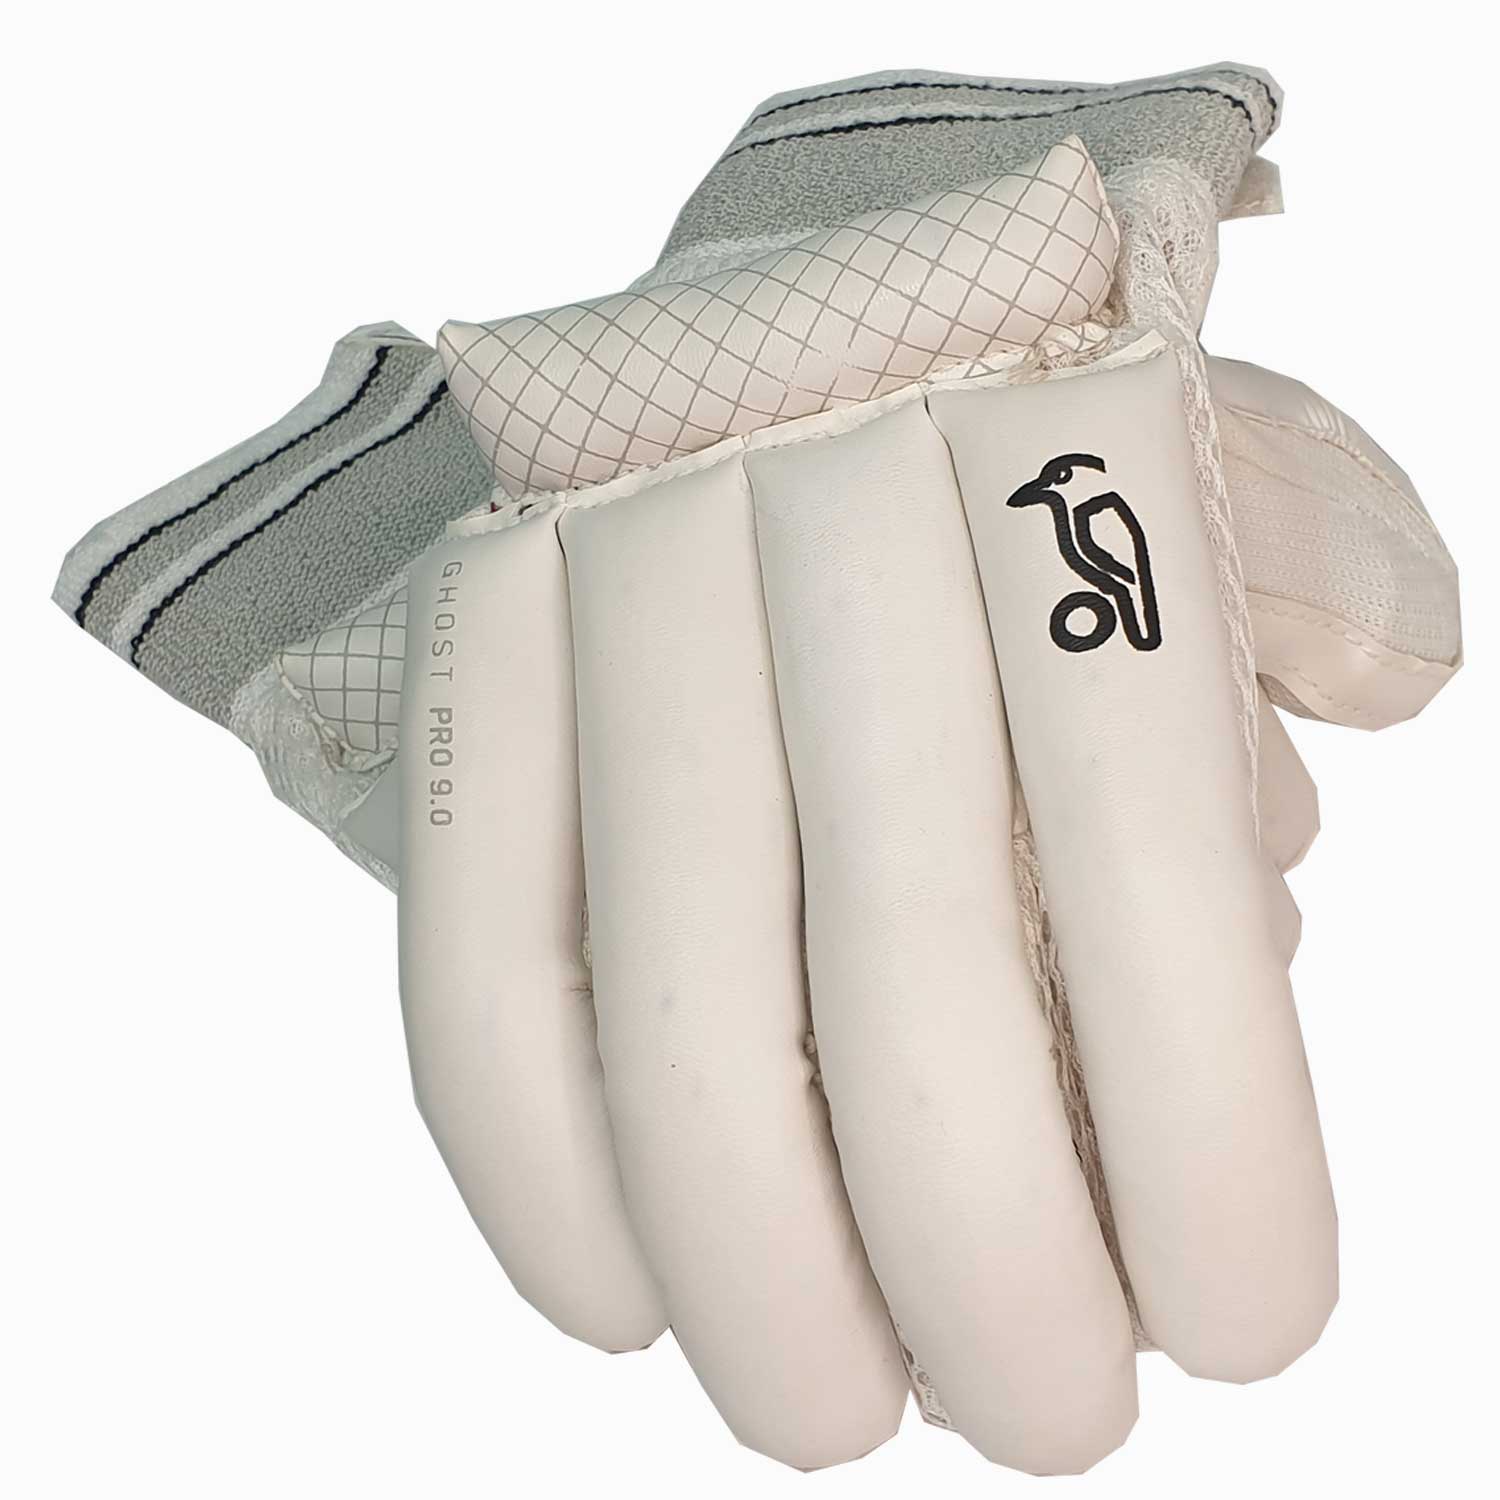 Kookaburra Ghost Pro 9.0 Cricket Batting Gloves - The Cricket Warehouse